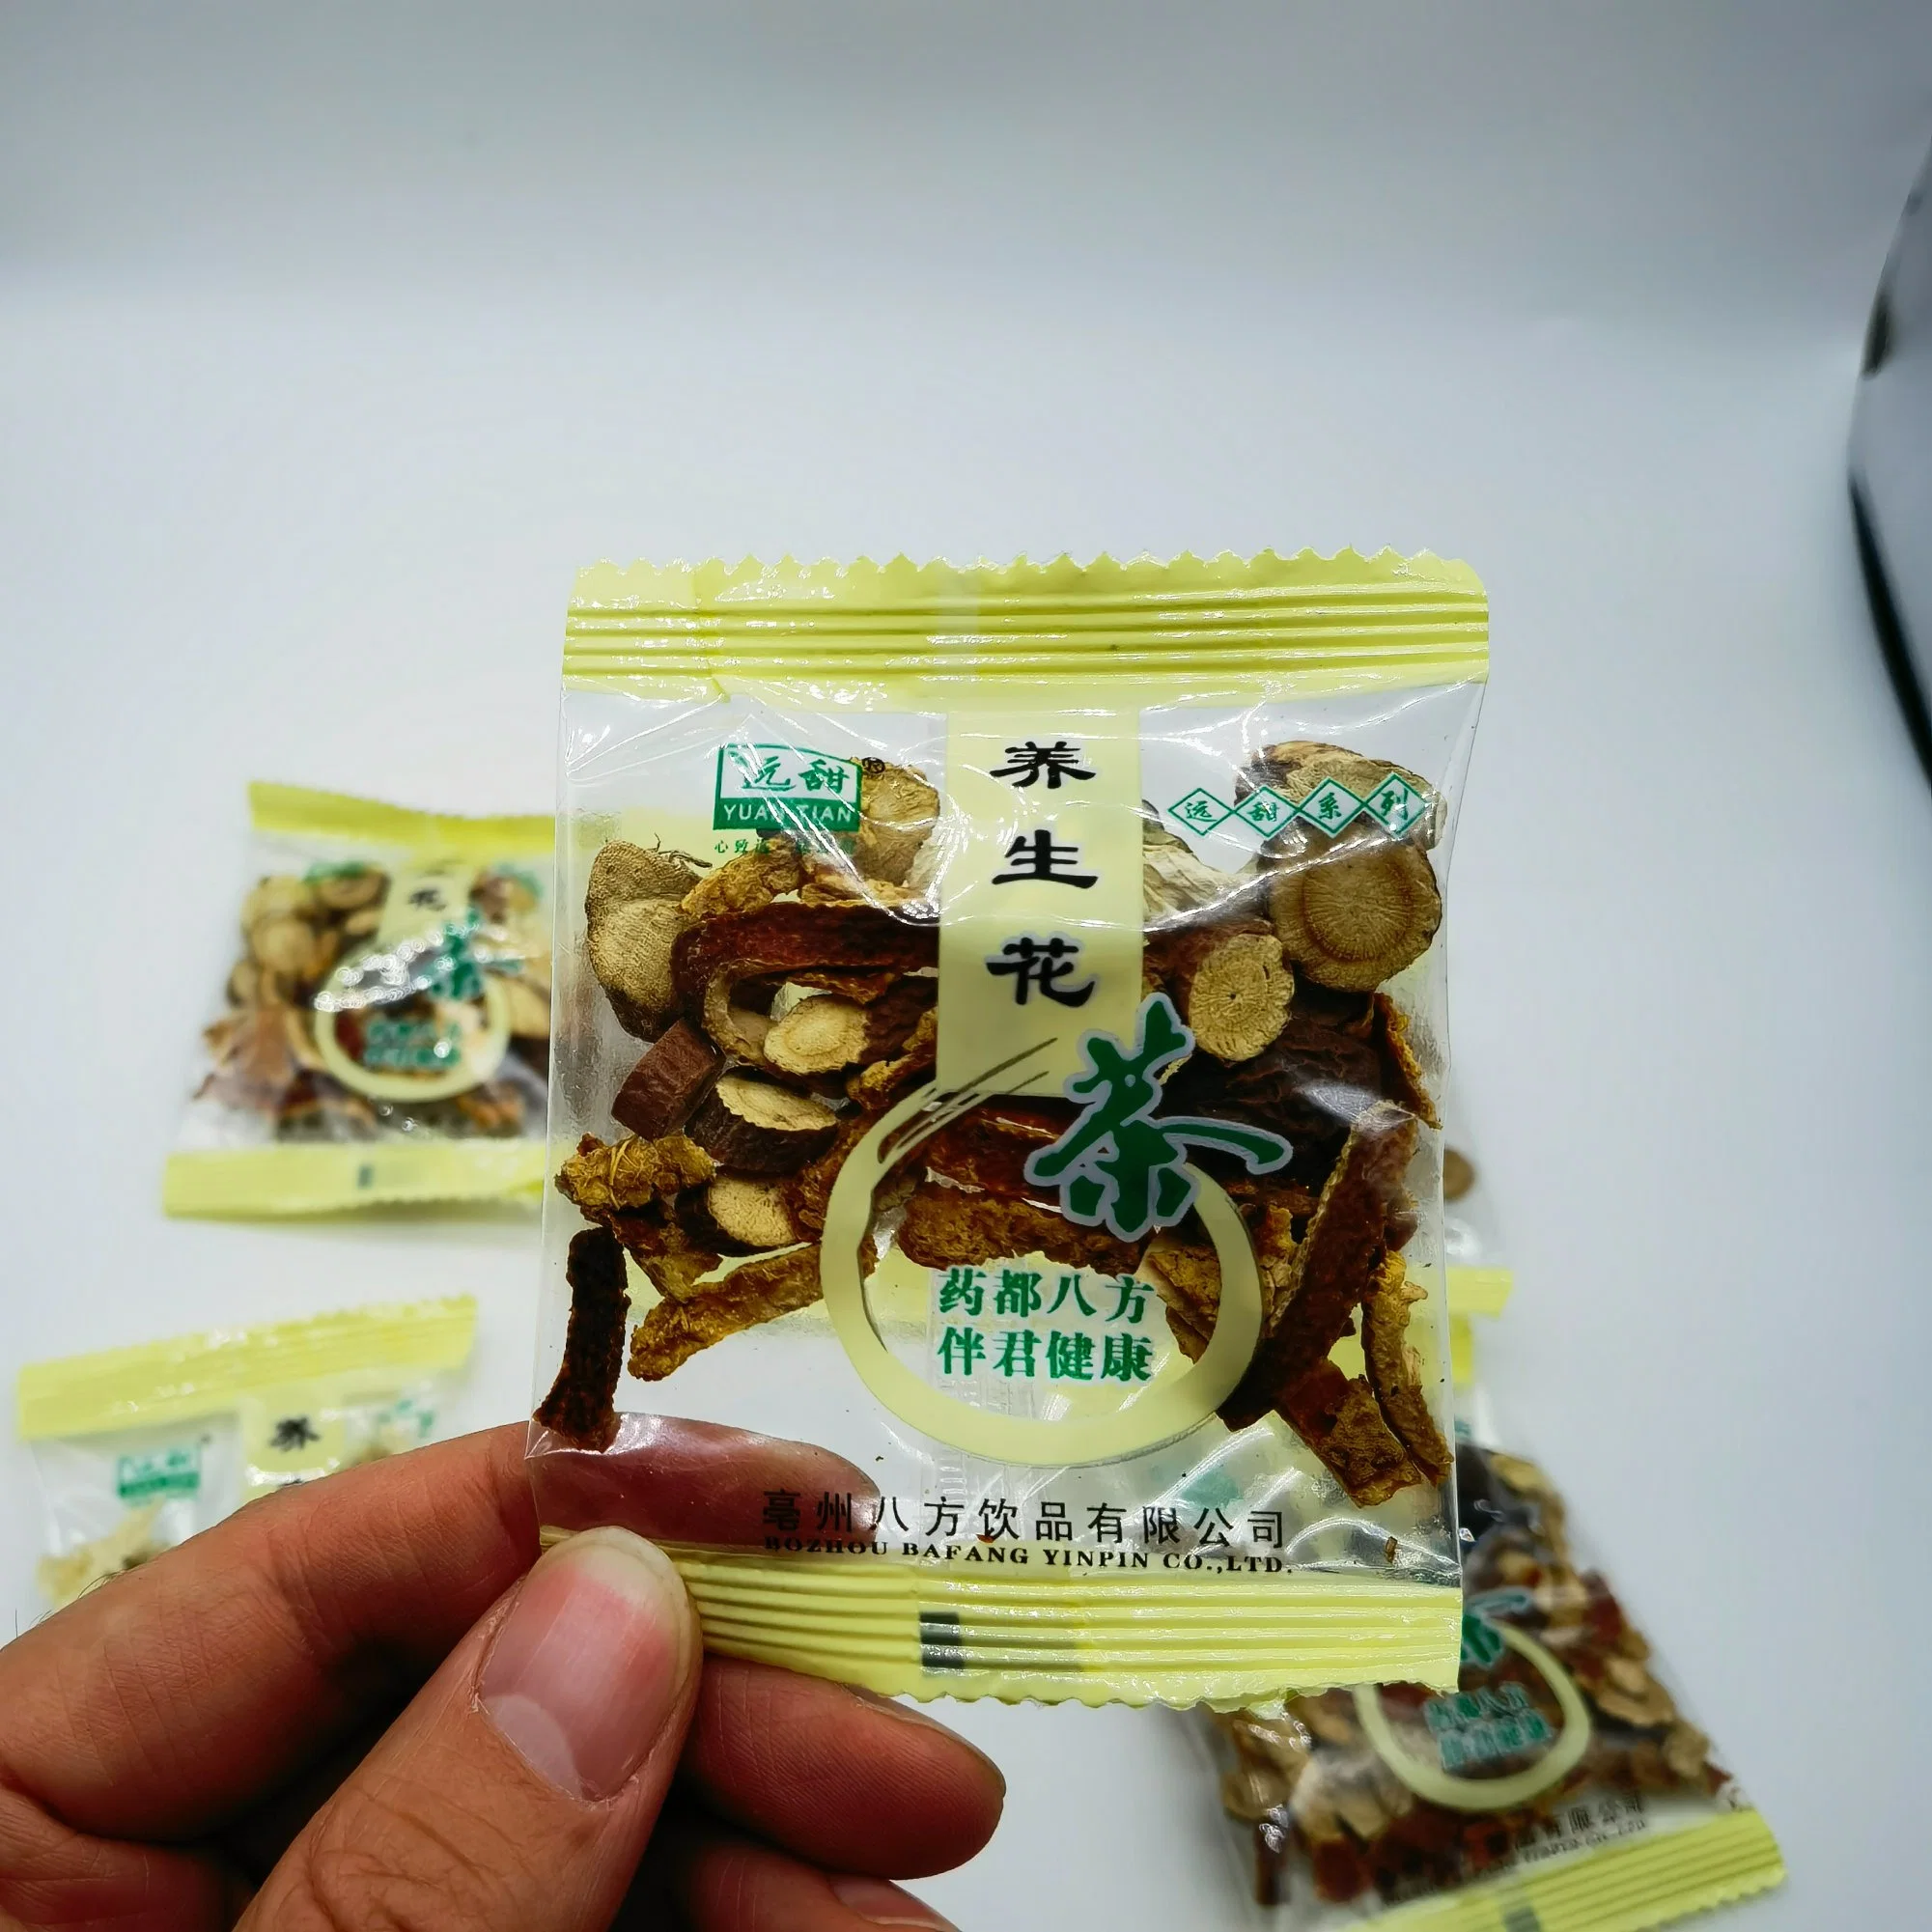 Yang Sheng Cha Gift Package Chinês Mixed Herbal Medicine Tea Saco para a saúde